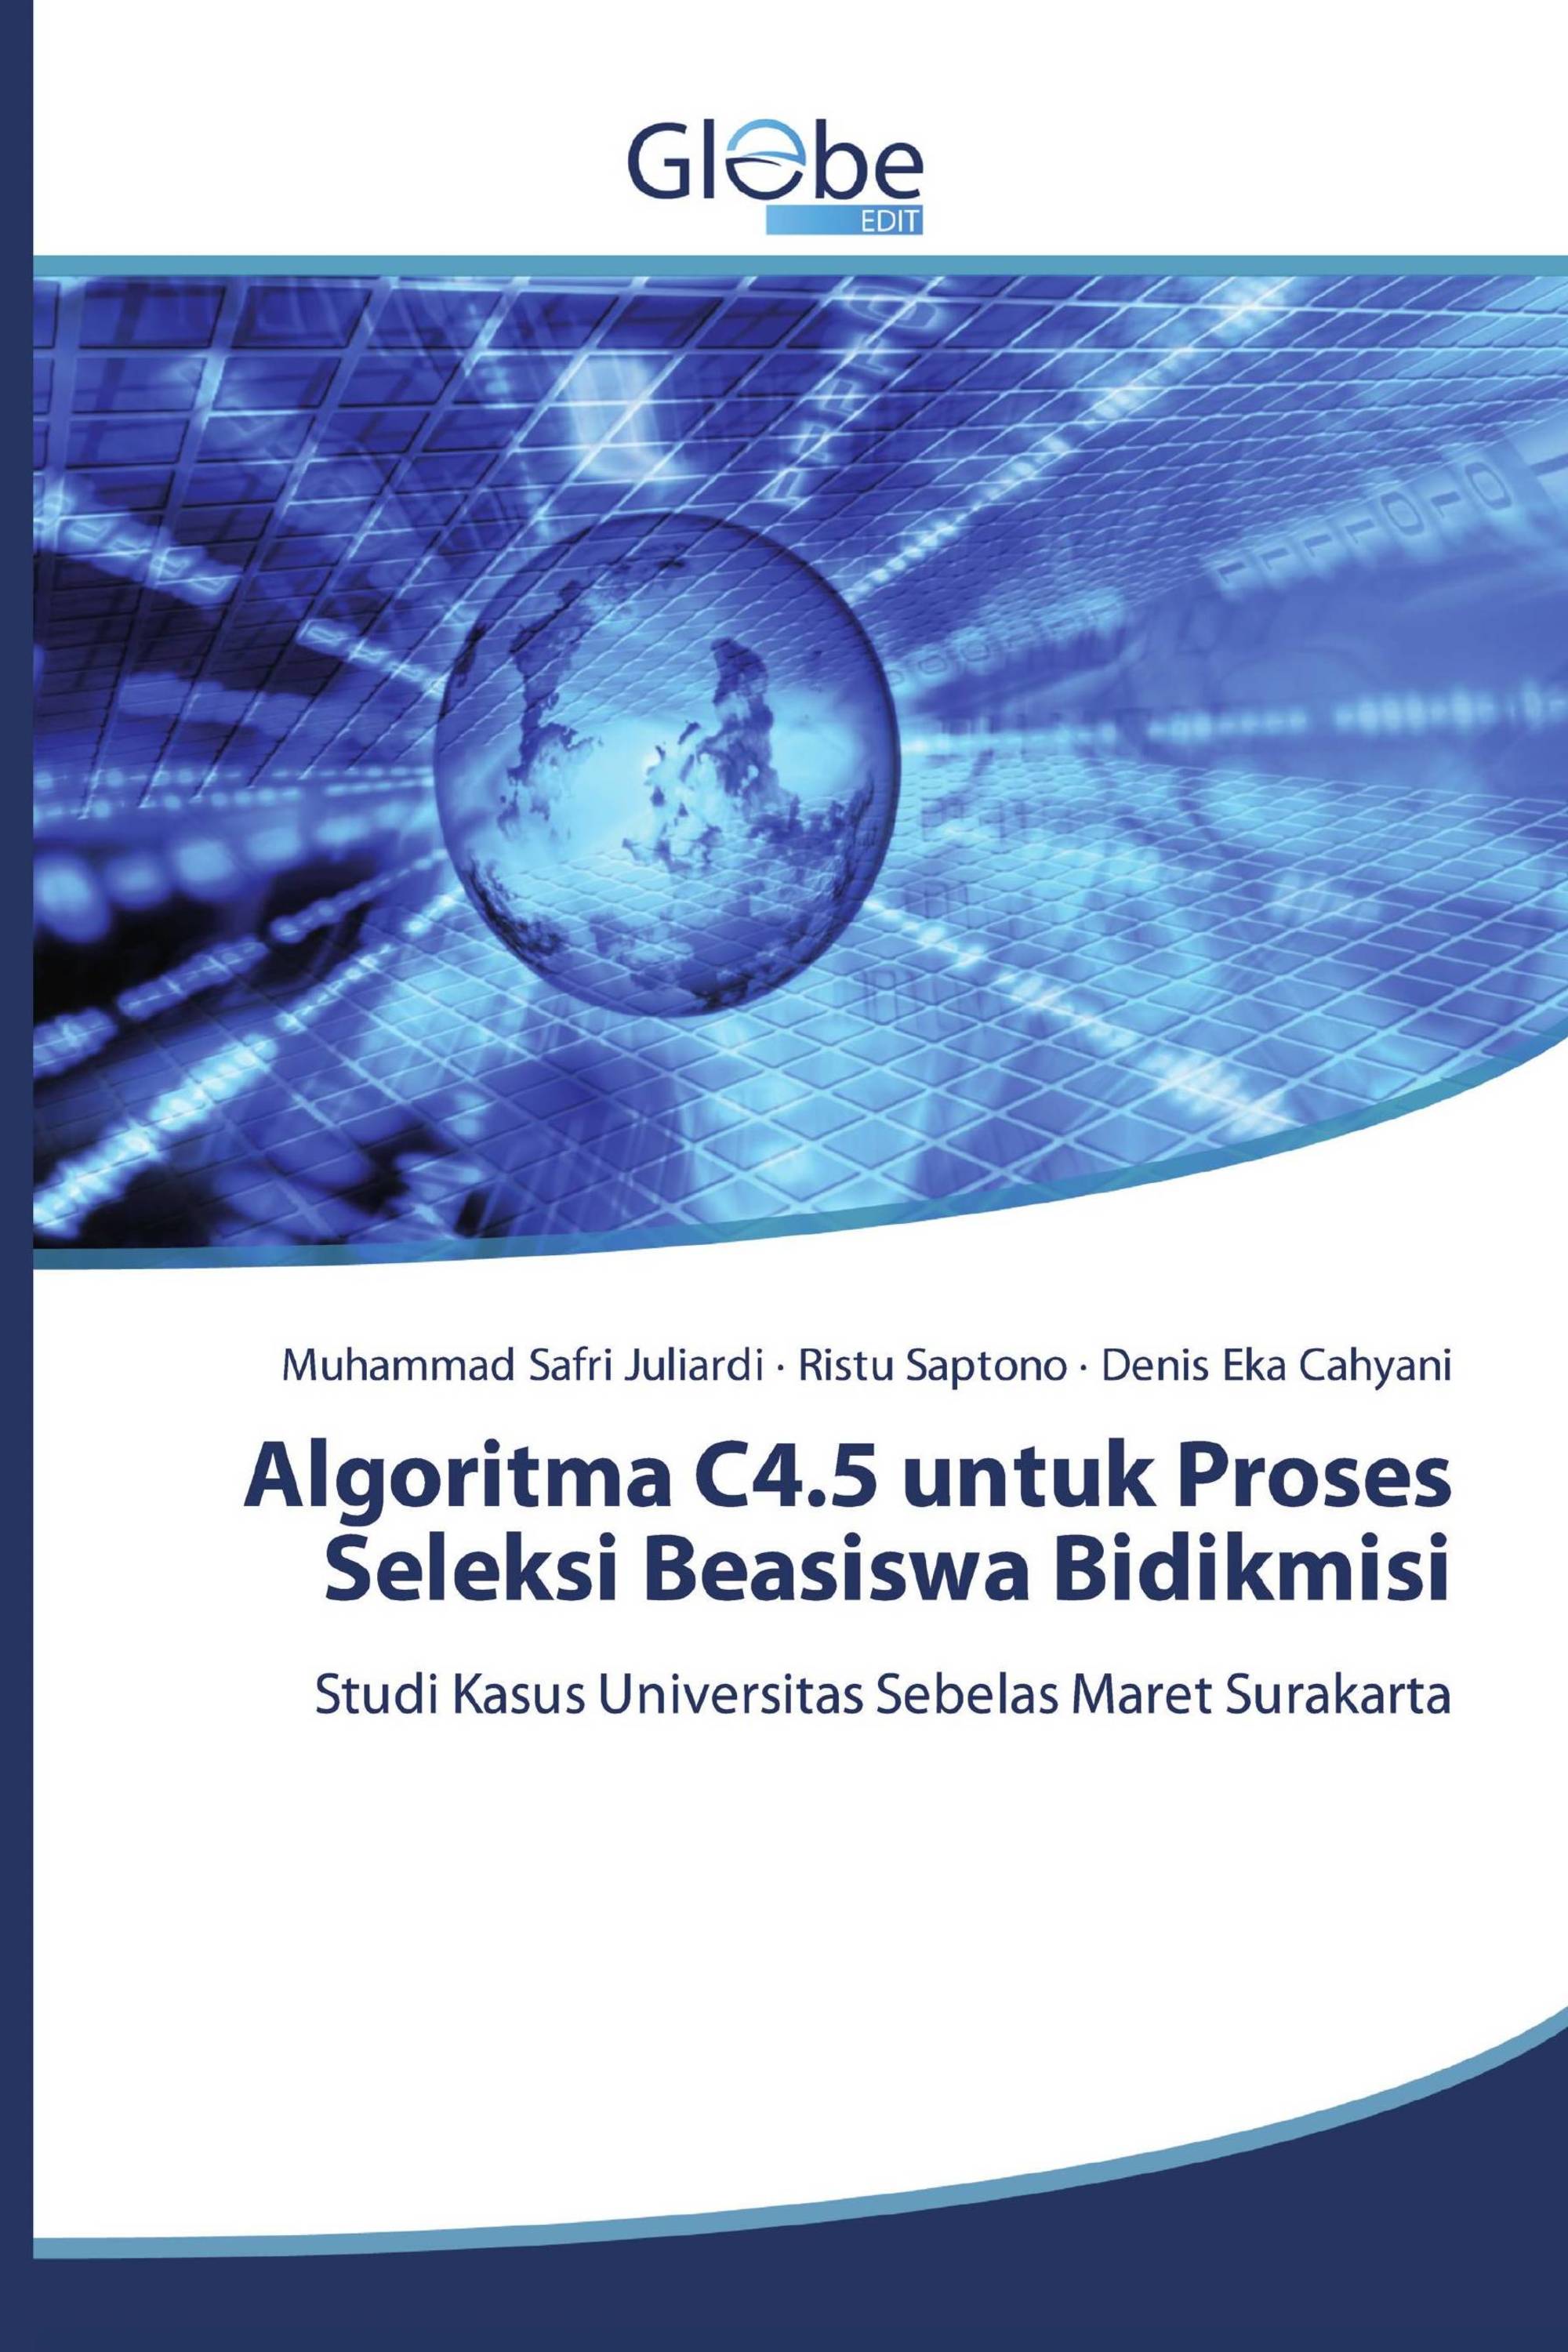 Algoritma C4.5 untuk Proses Seleksi Beasiswa Bidikmisi